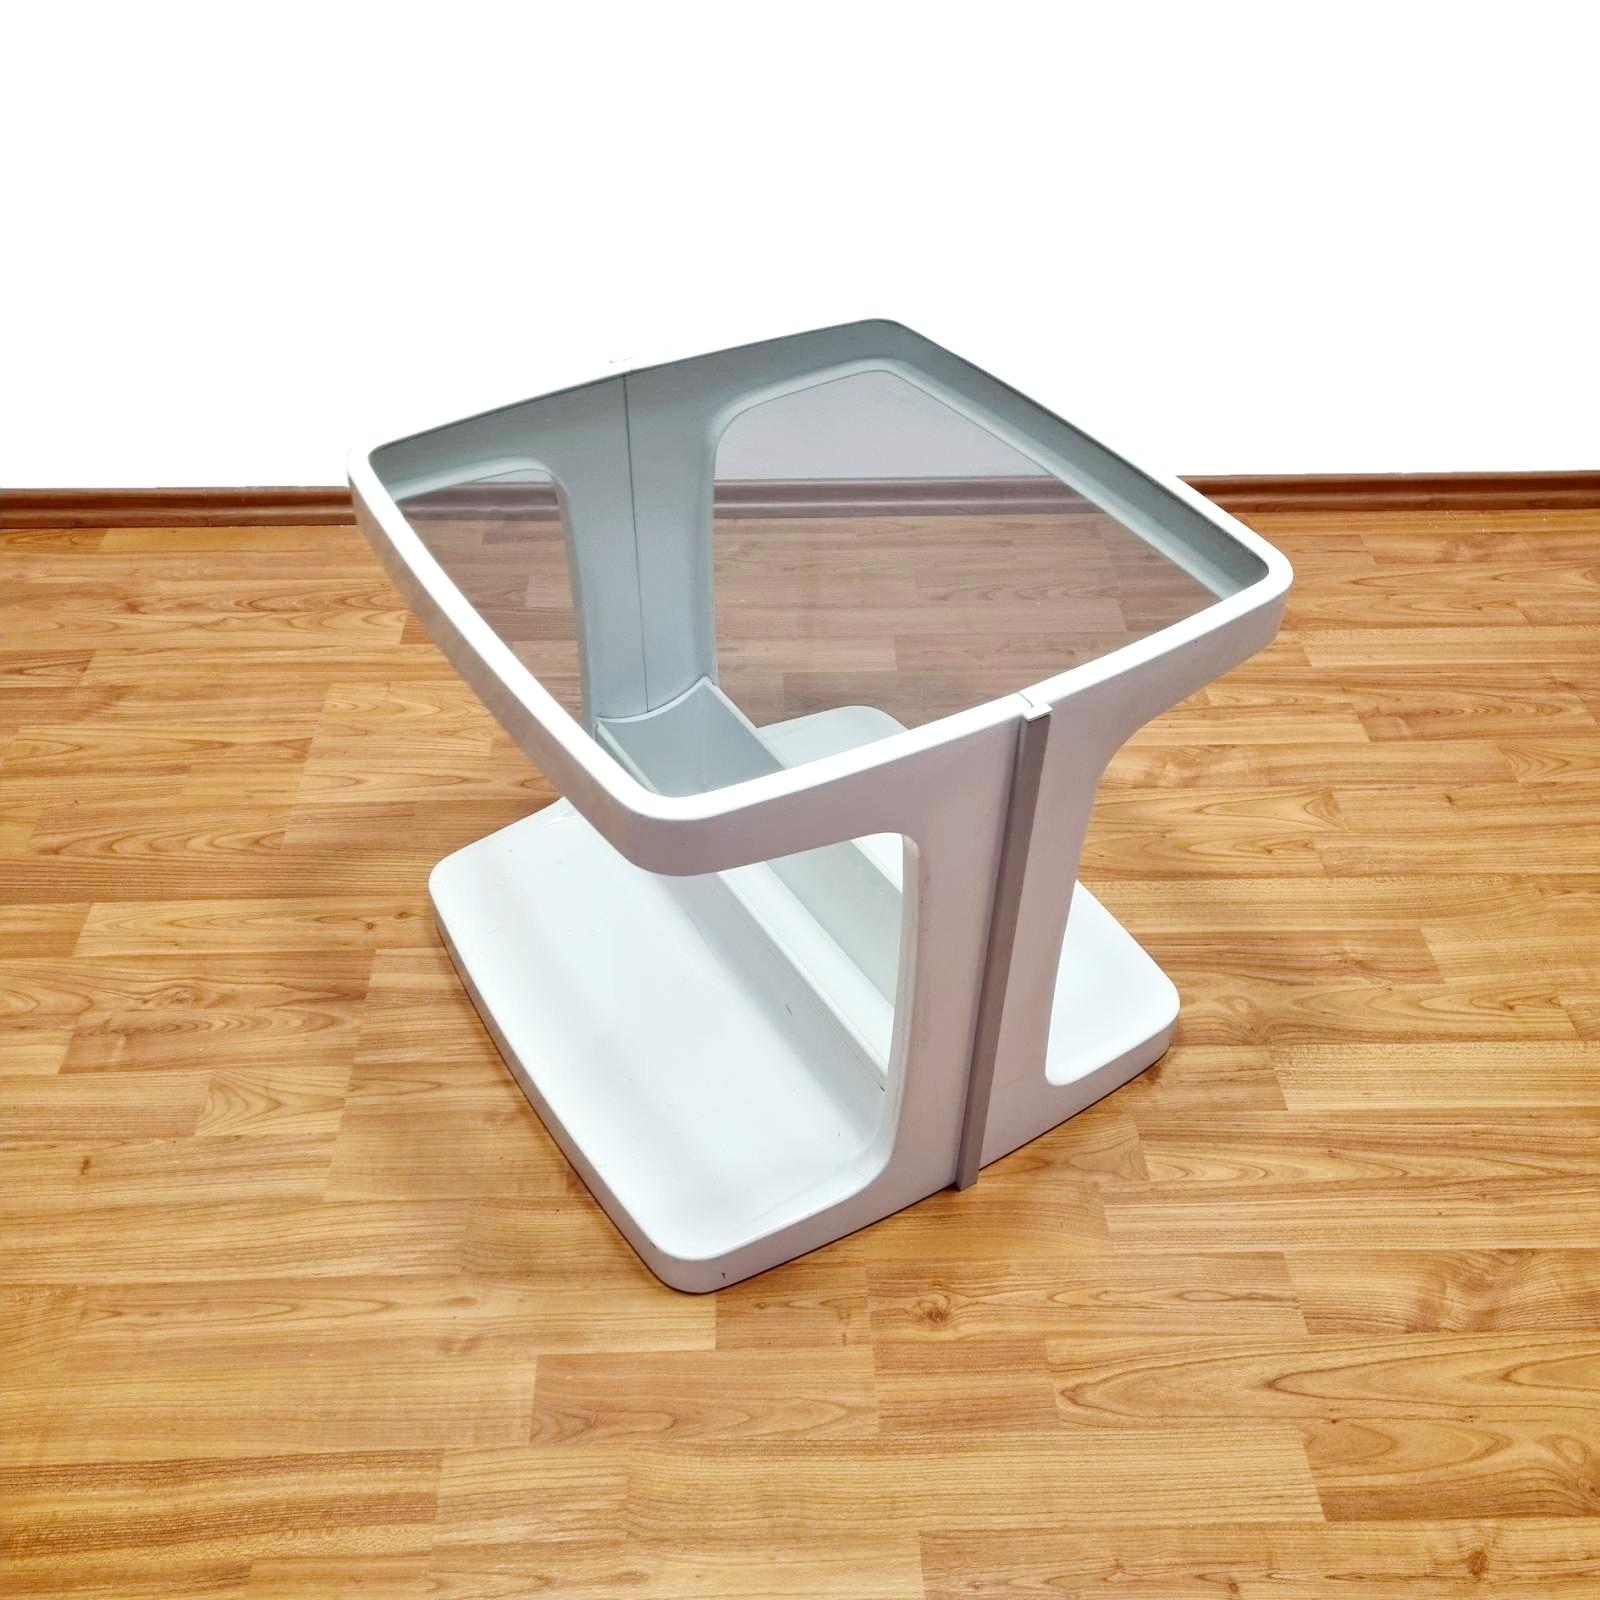 Jolie table basse conçue par Marc Held pour Prisunic
Design/One classique de l'ère spatiale
Elle peut être utilisée comme table basse, table d'appoint ou table de cocktail.